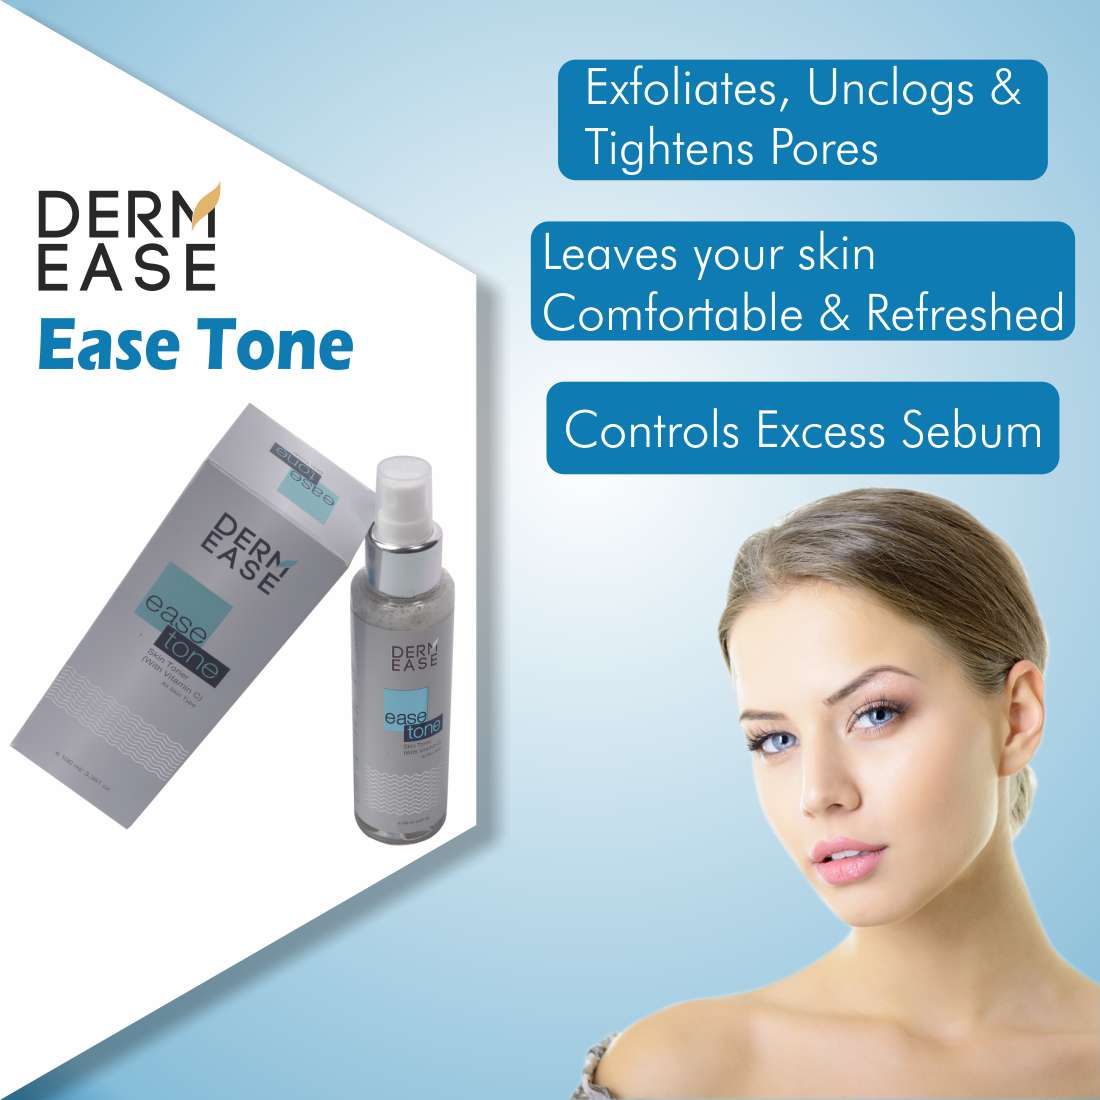 DERM EASE Ease Tone Skin Toner Combo